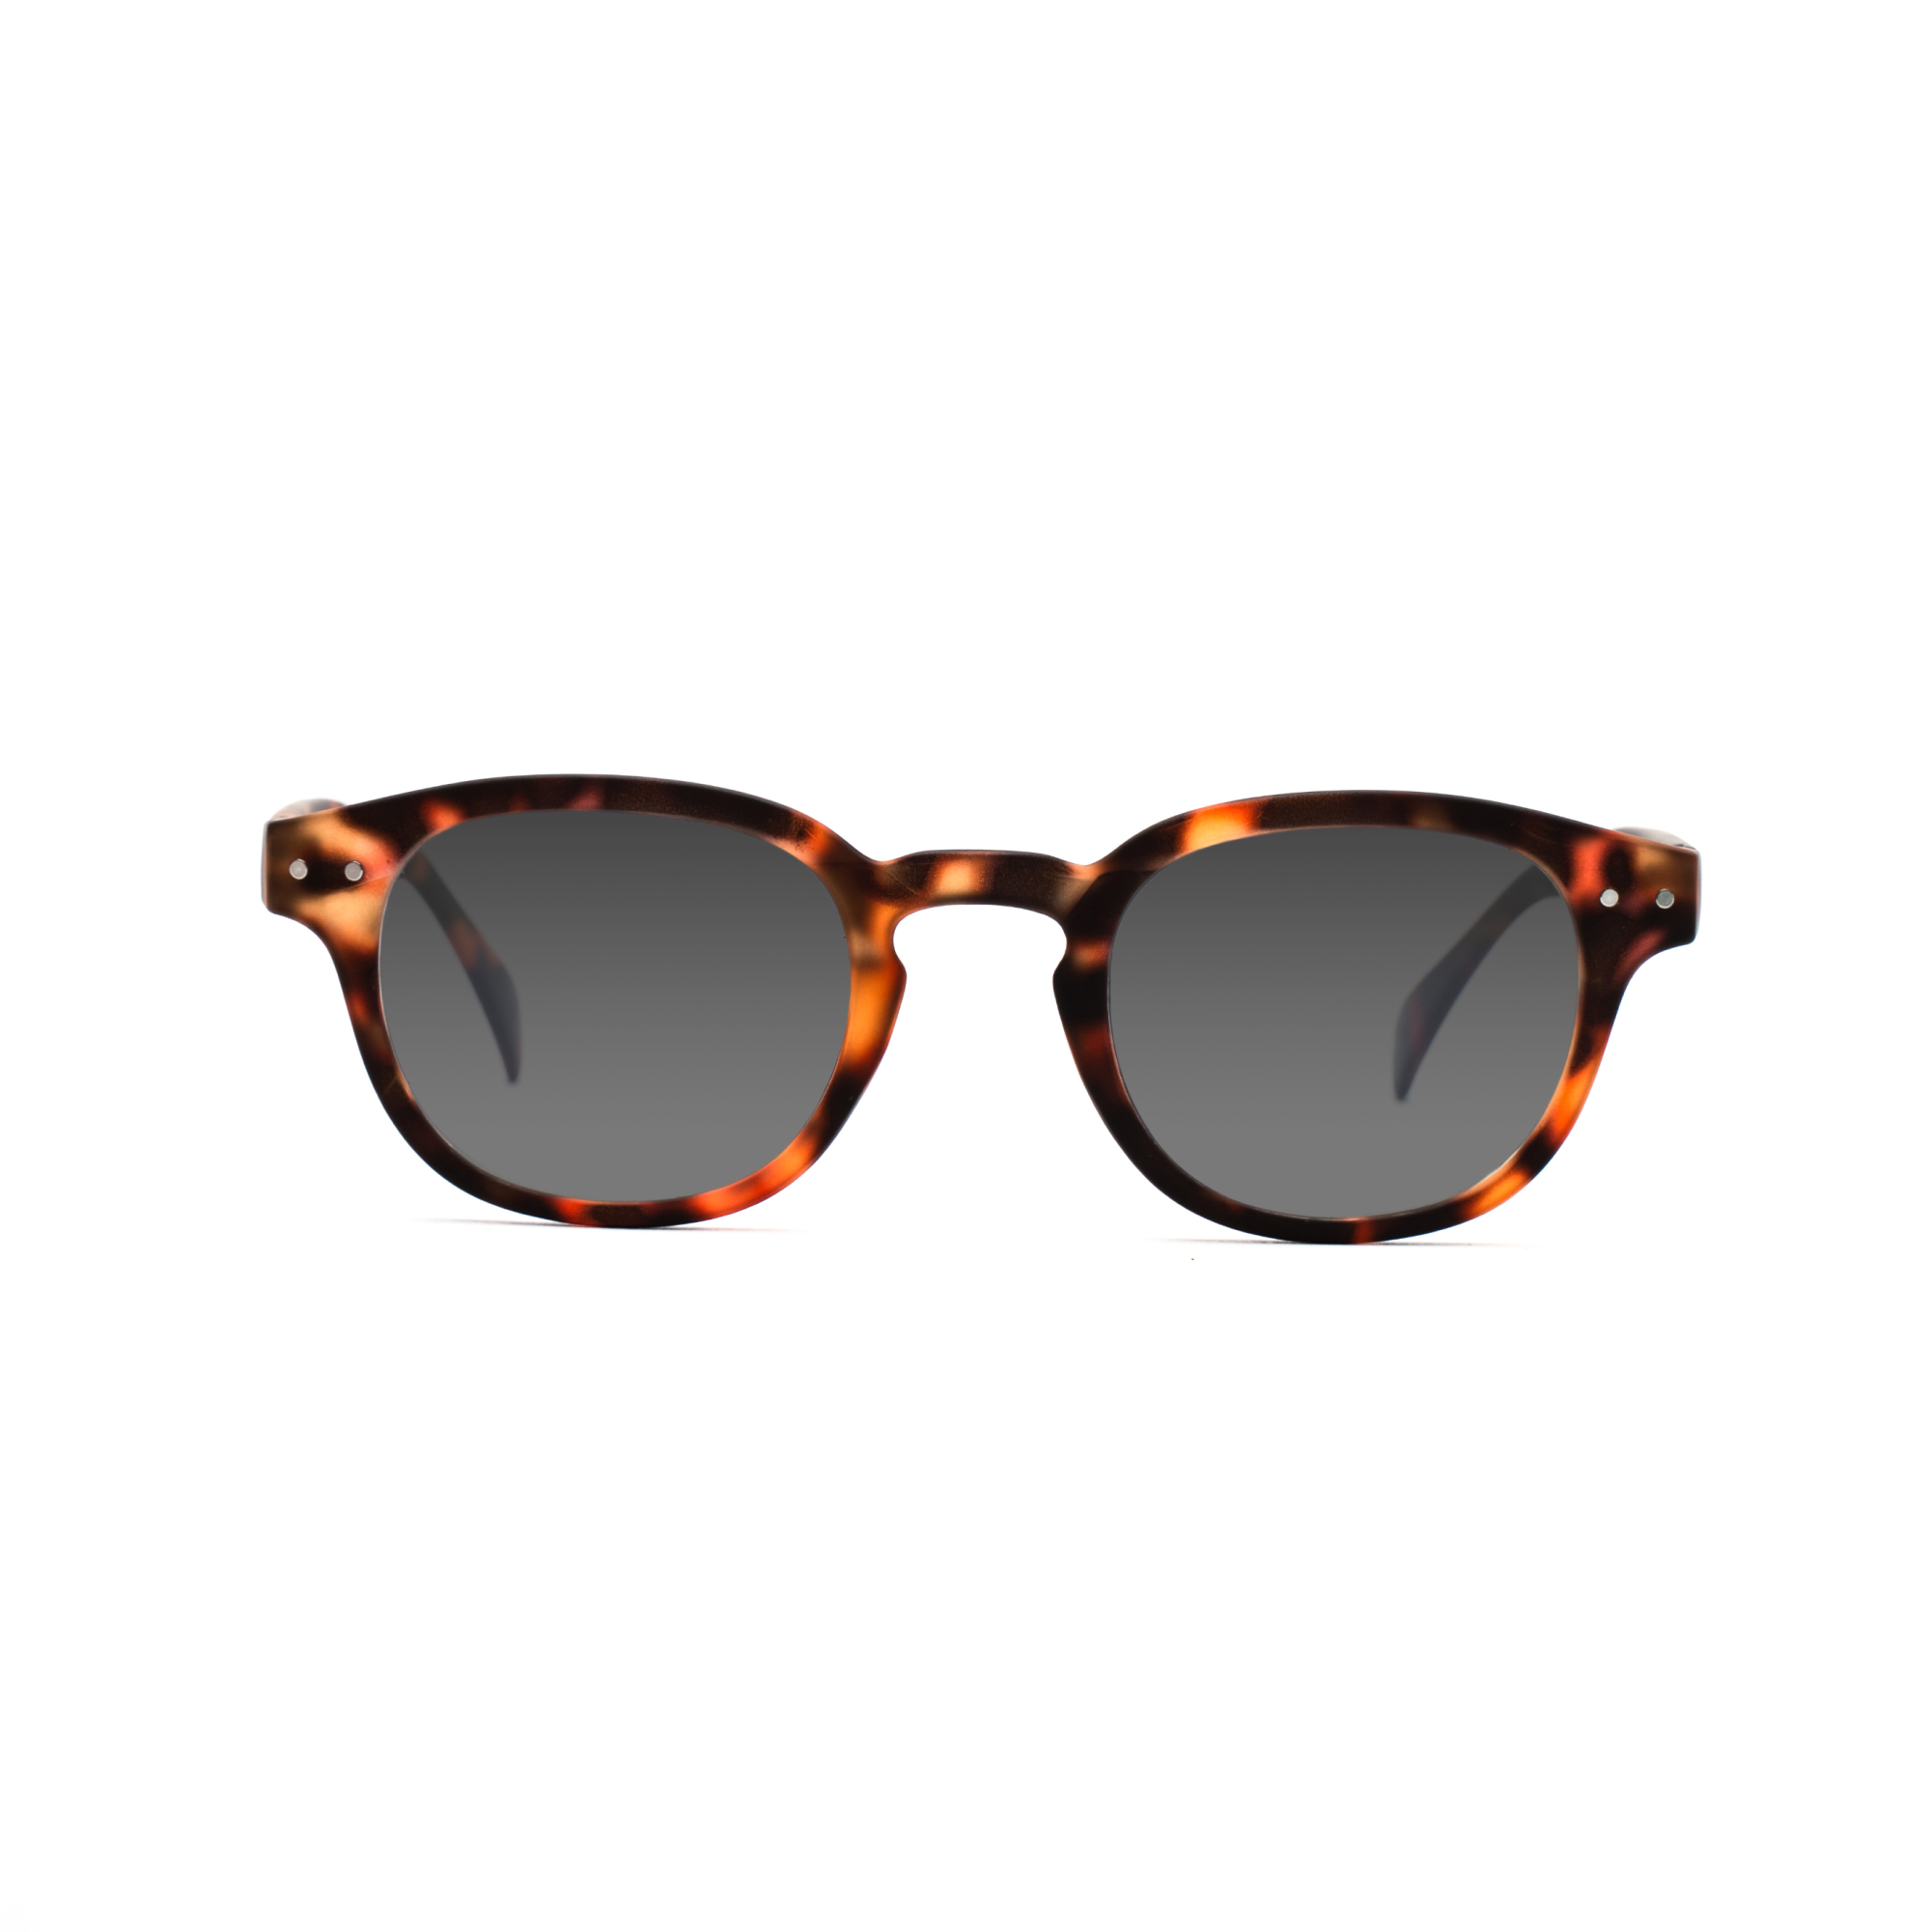 men's polarized sunglasses – Anton Polarised SUN m - Tortoise